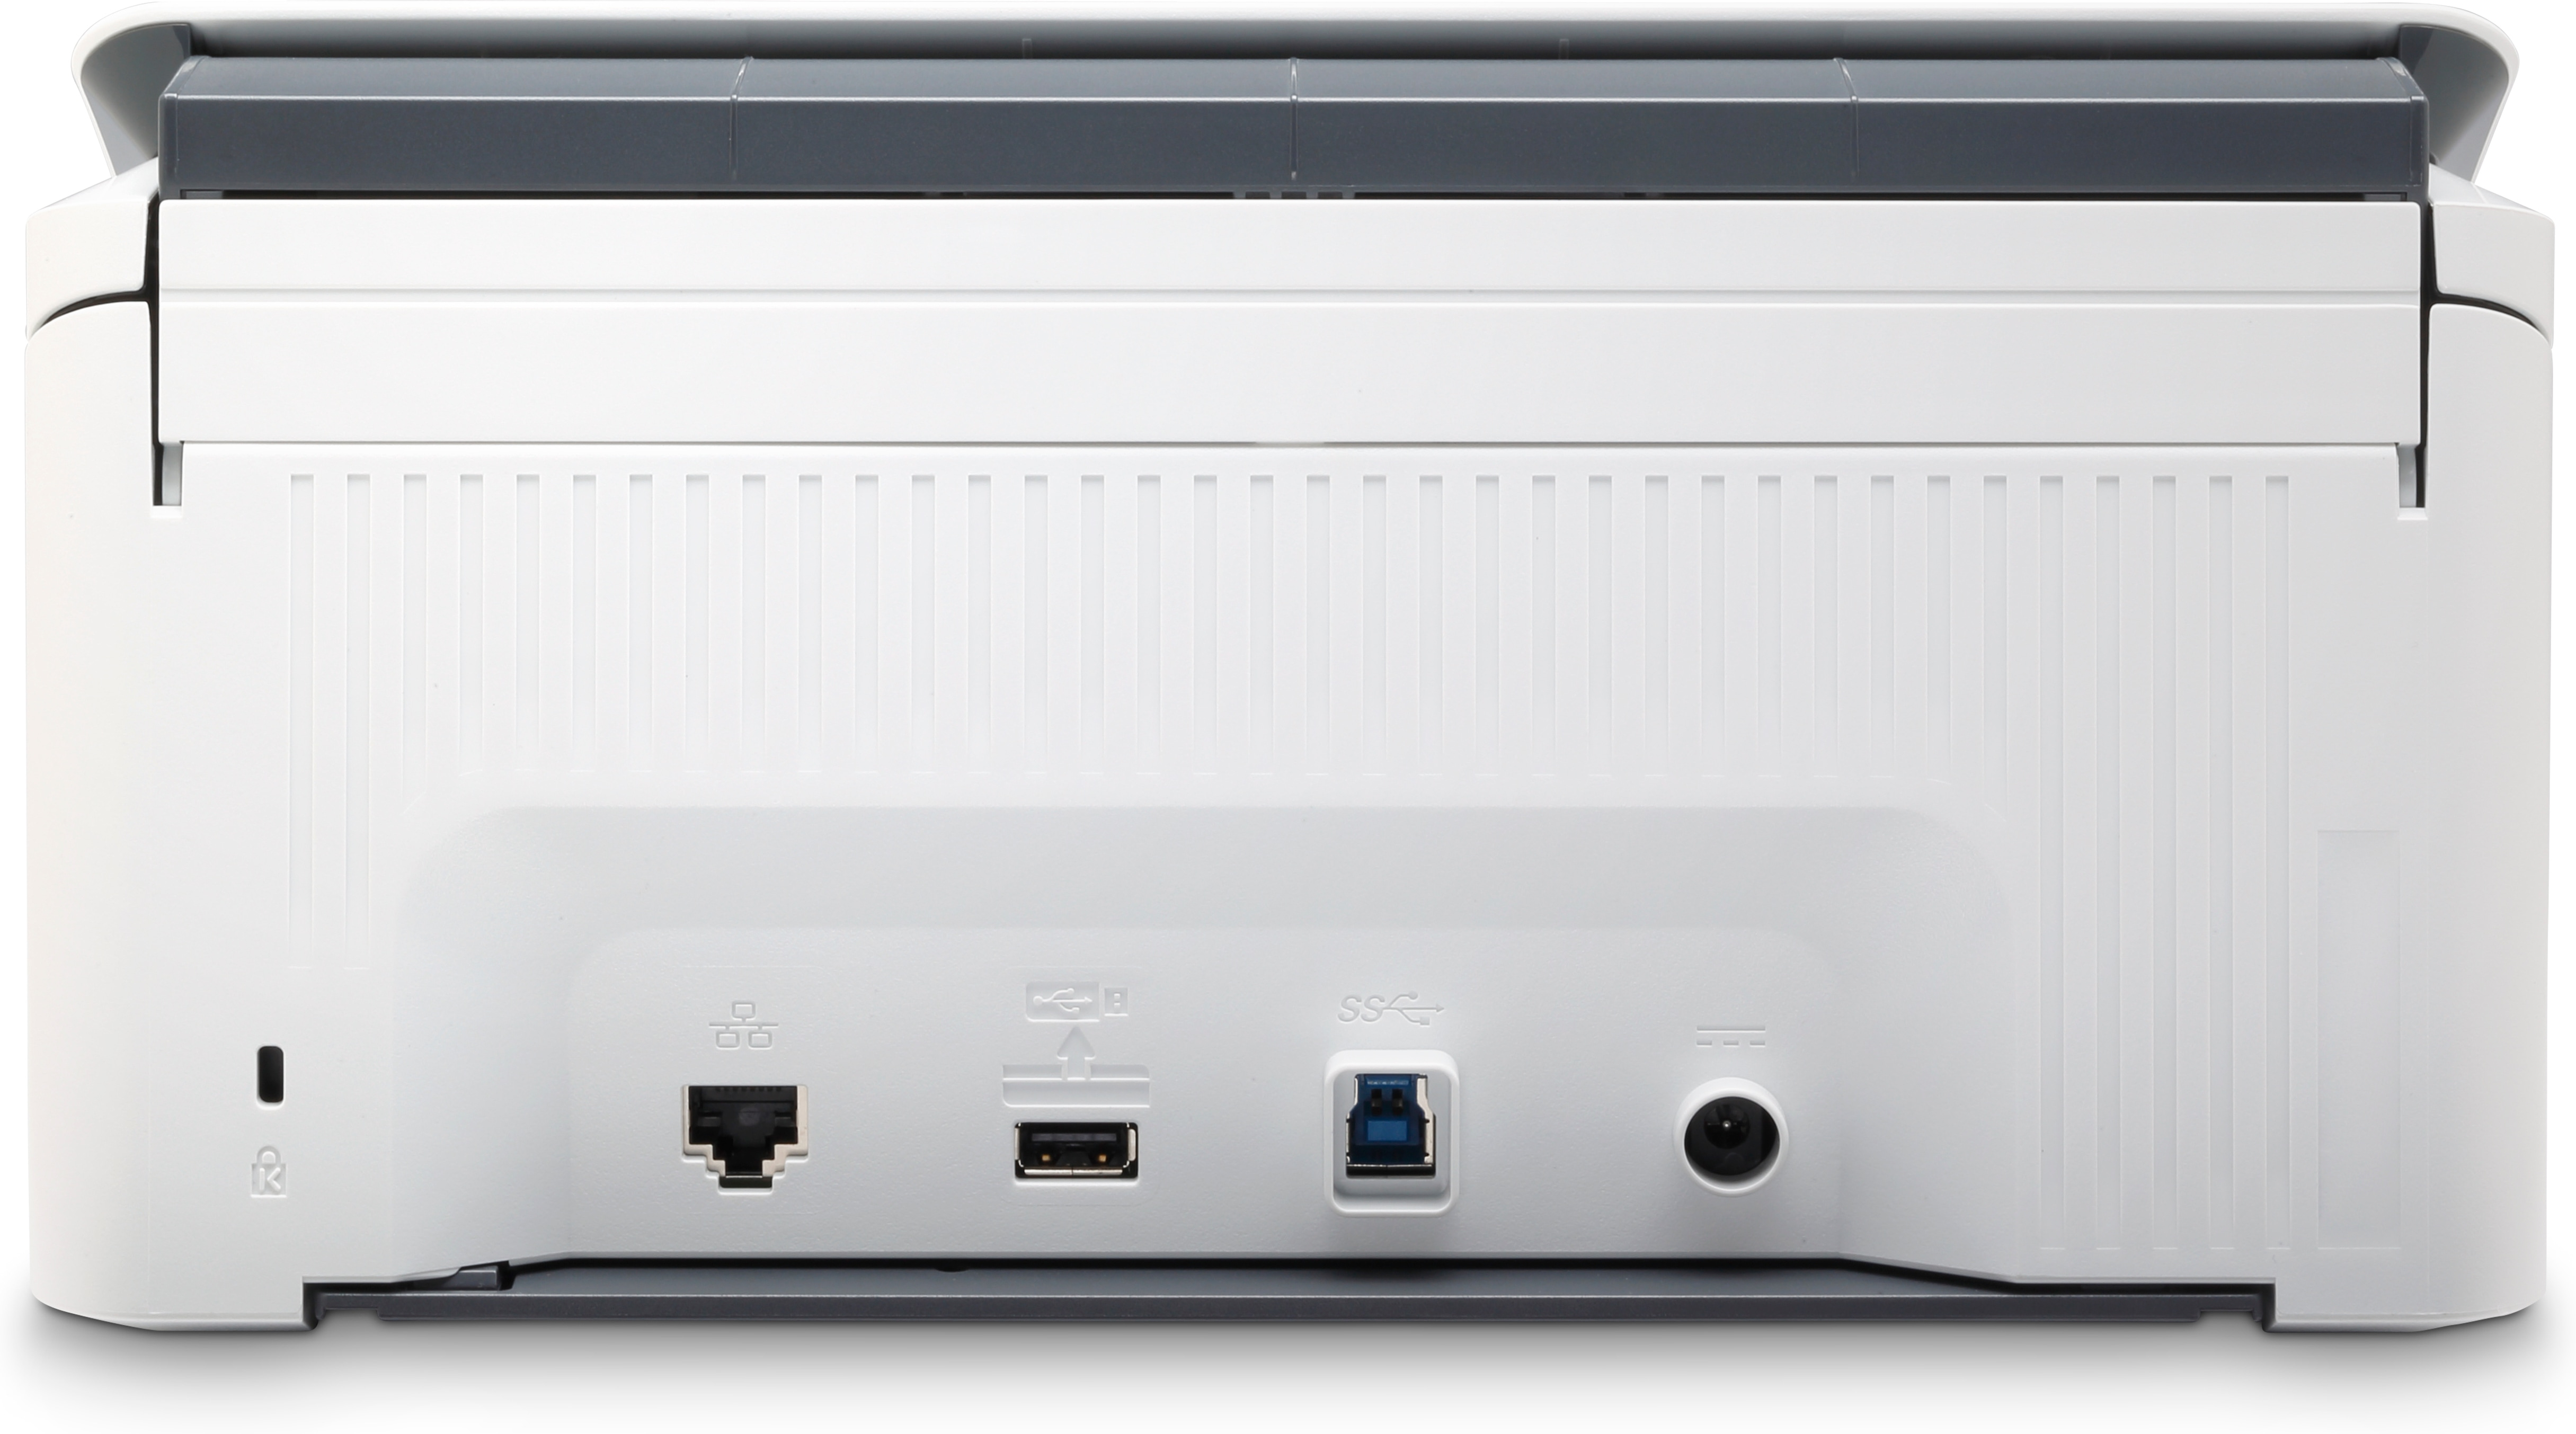 HP Scanjet Pro N4000 snw1 Sheet-feed Scanner Scanner mit Vorlageneinzug 600 x 600 DPI A4 Schwarz, Weiß